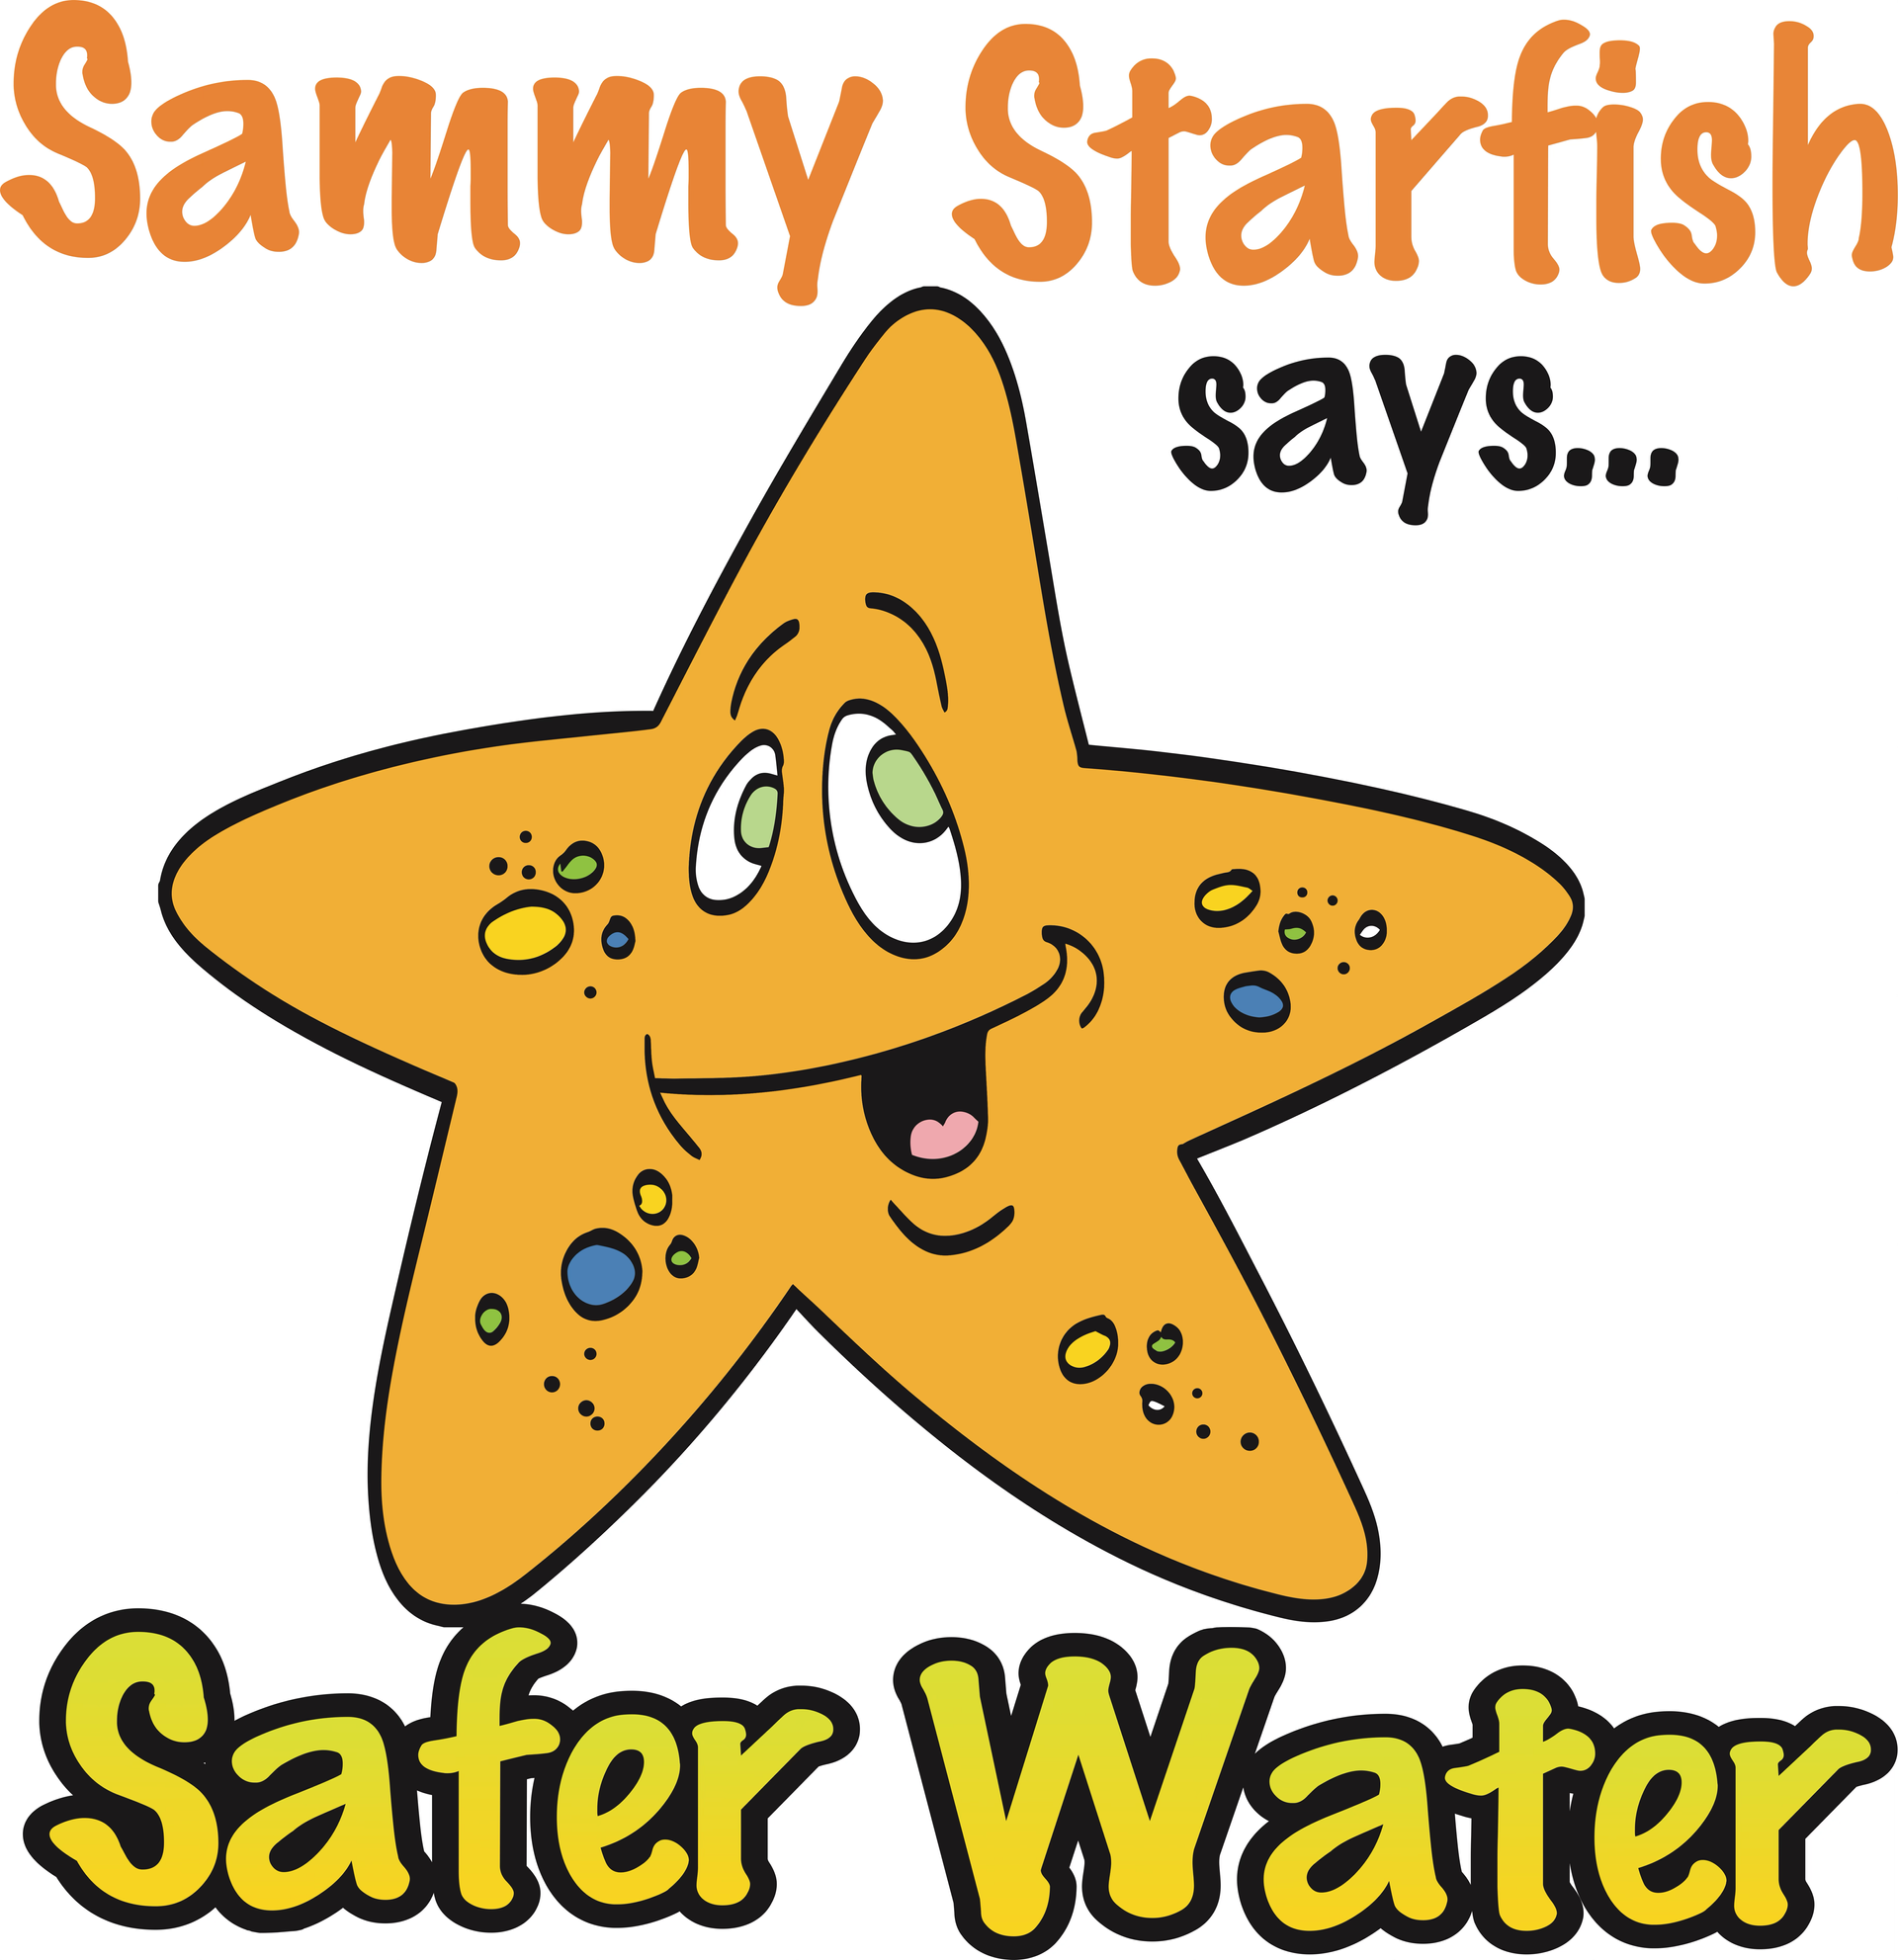 a cartoon starfish says sammy starfish says safer water